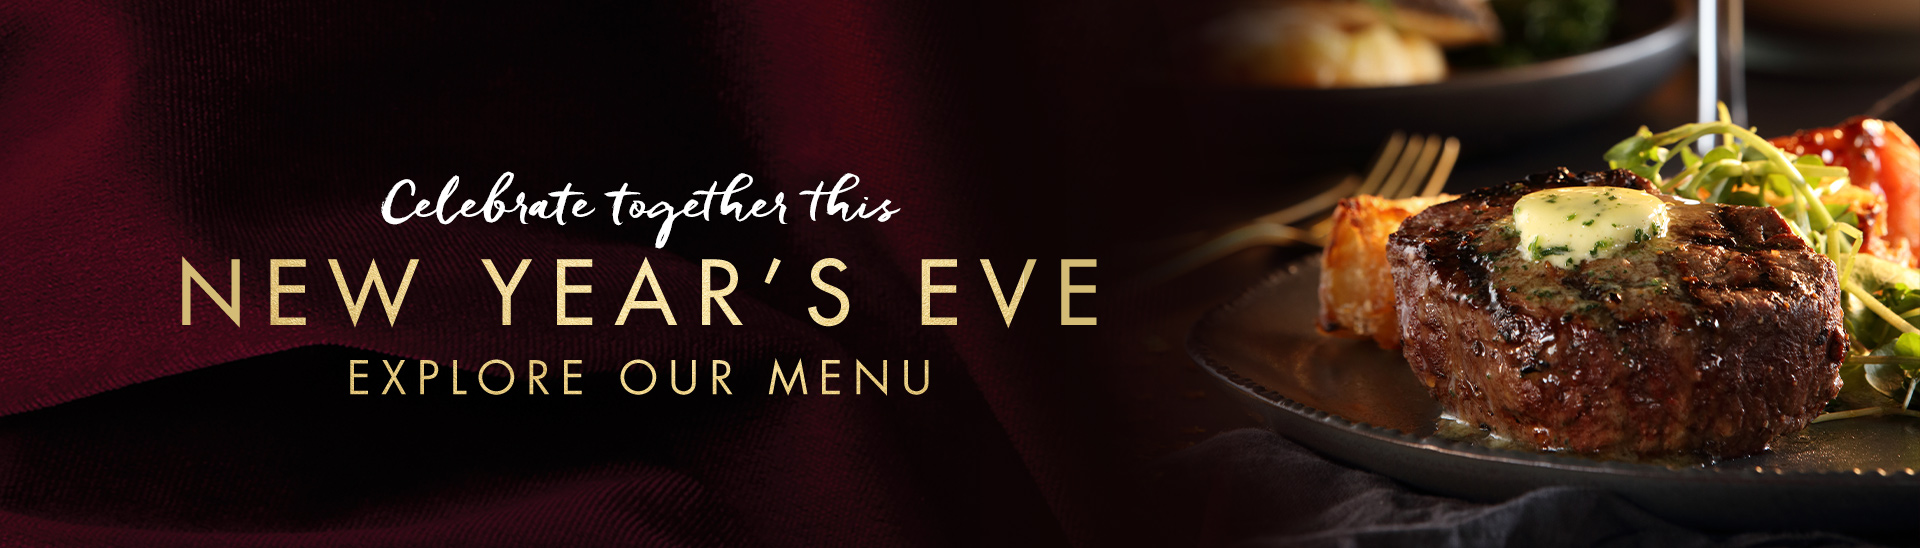 New Year's eve menu at Miller & Carter